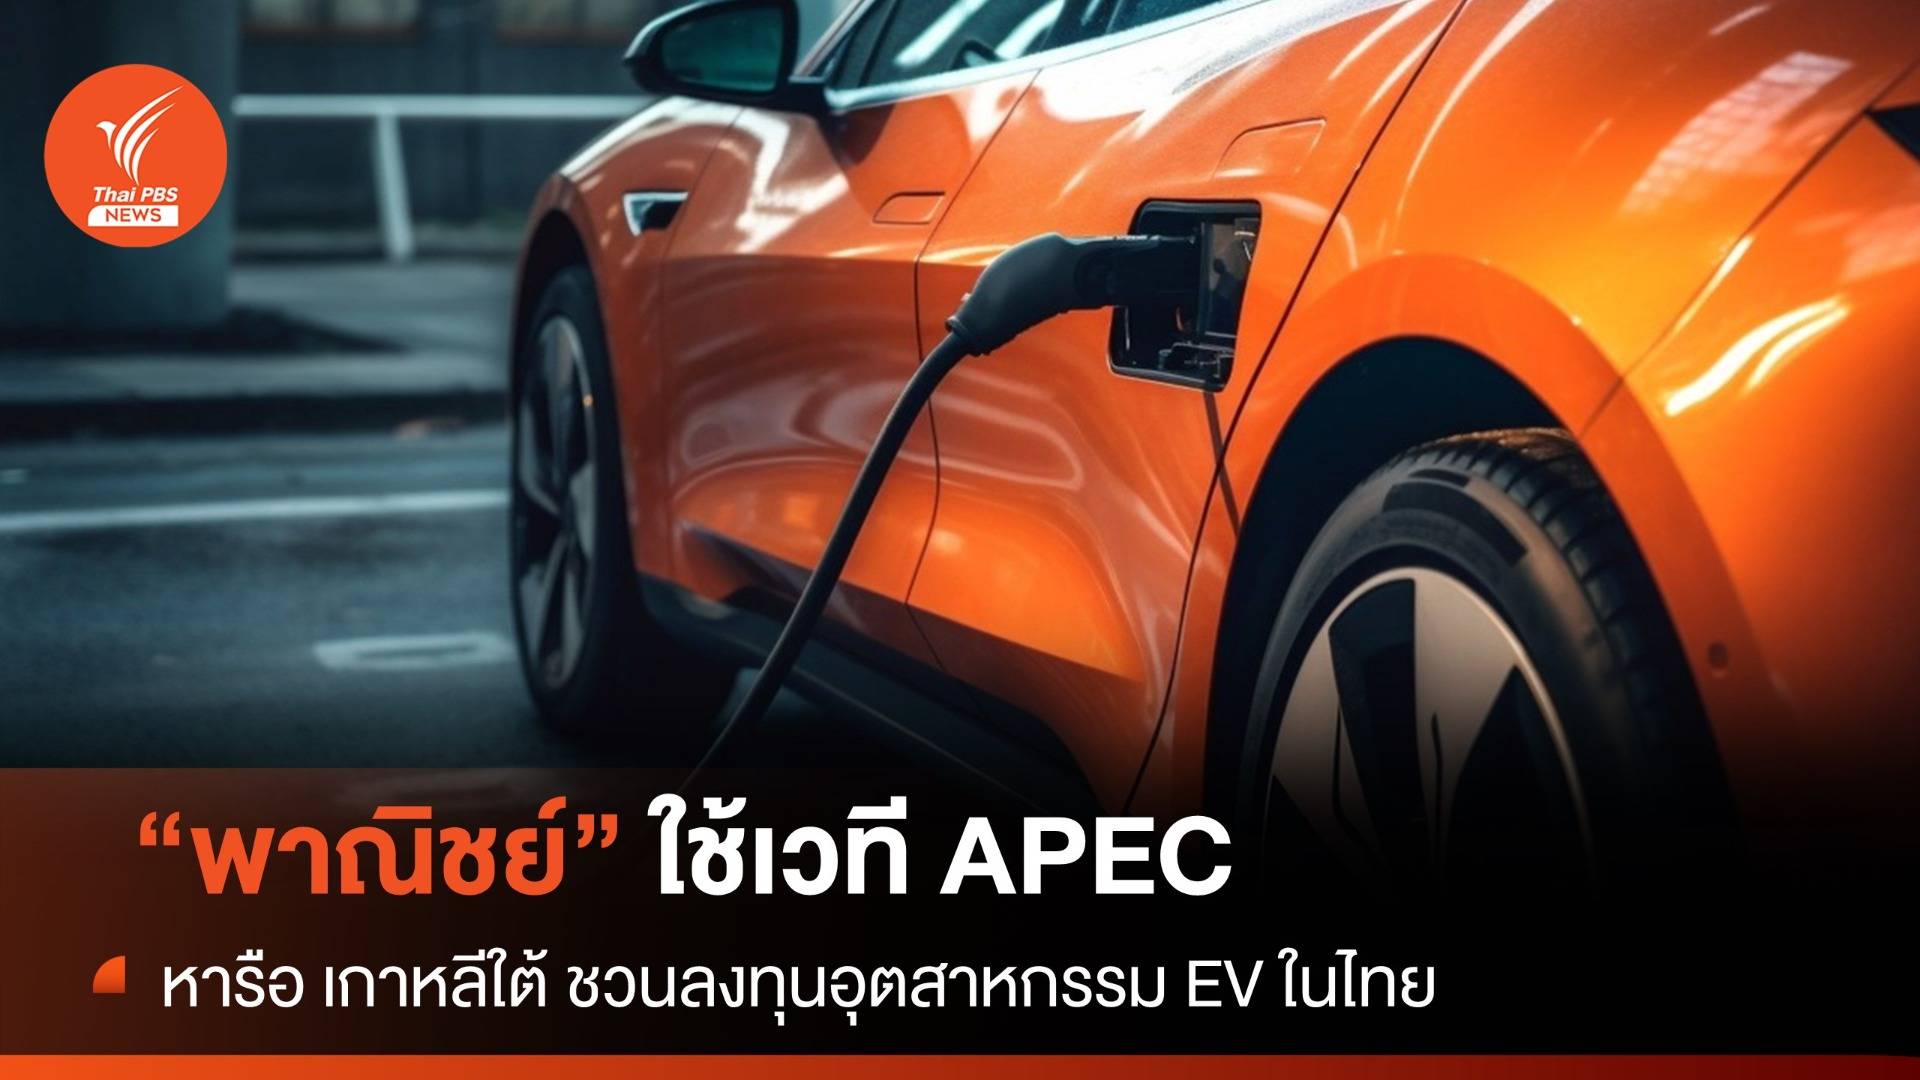  "พาณิชย์" ใช้เวที APEC หารือ เกาหลีใต้ ชวนลงทุนอุตสาหกรรม EV ในไทย